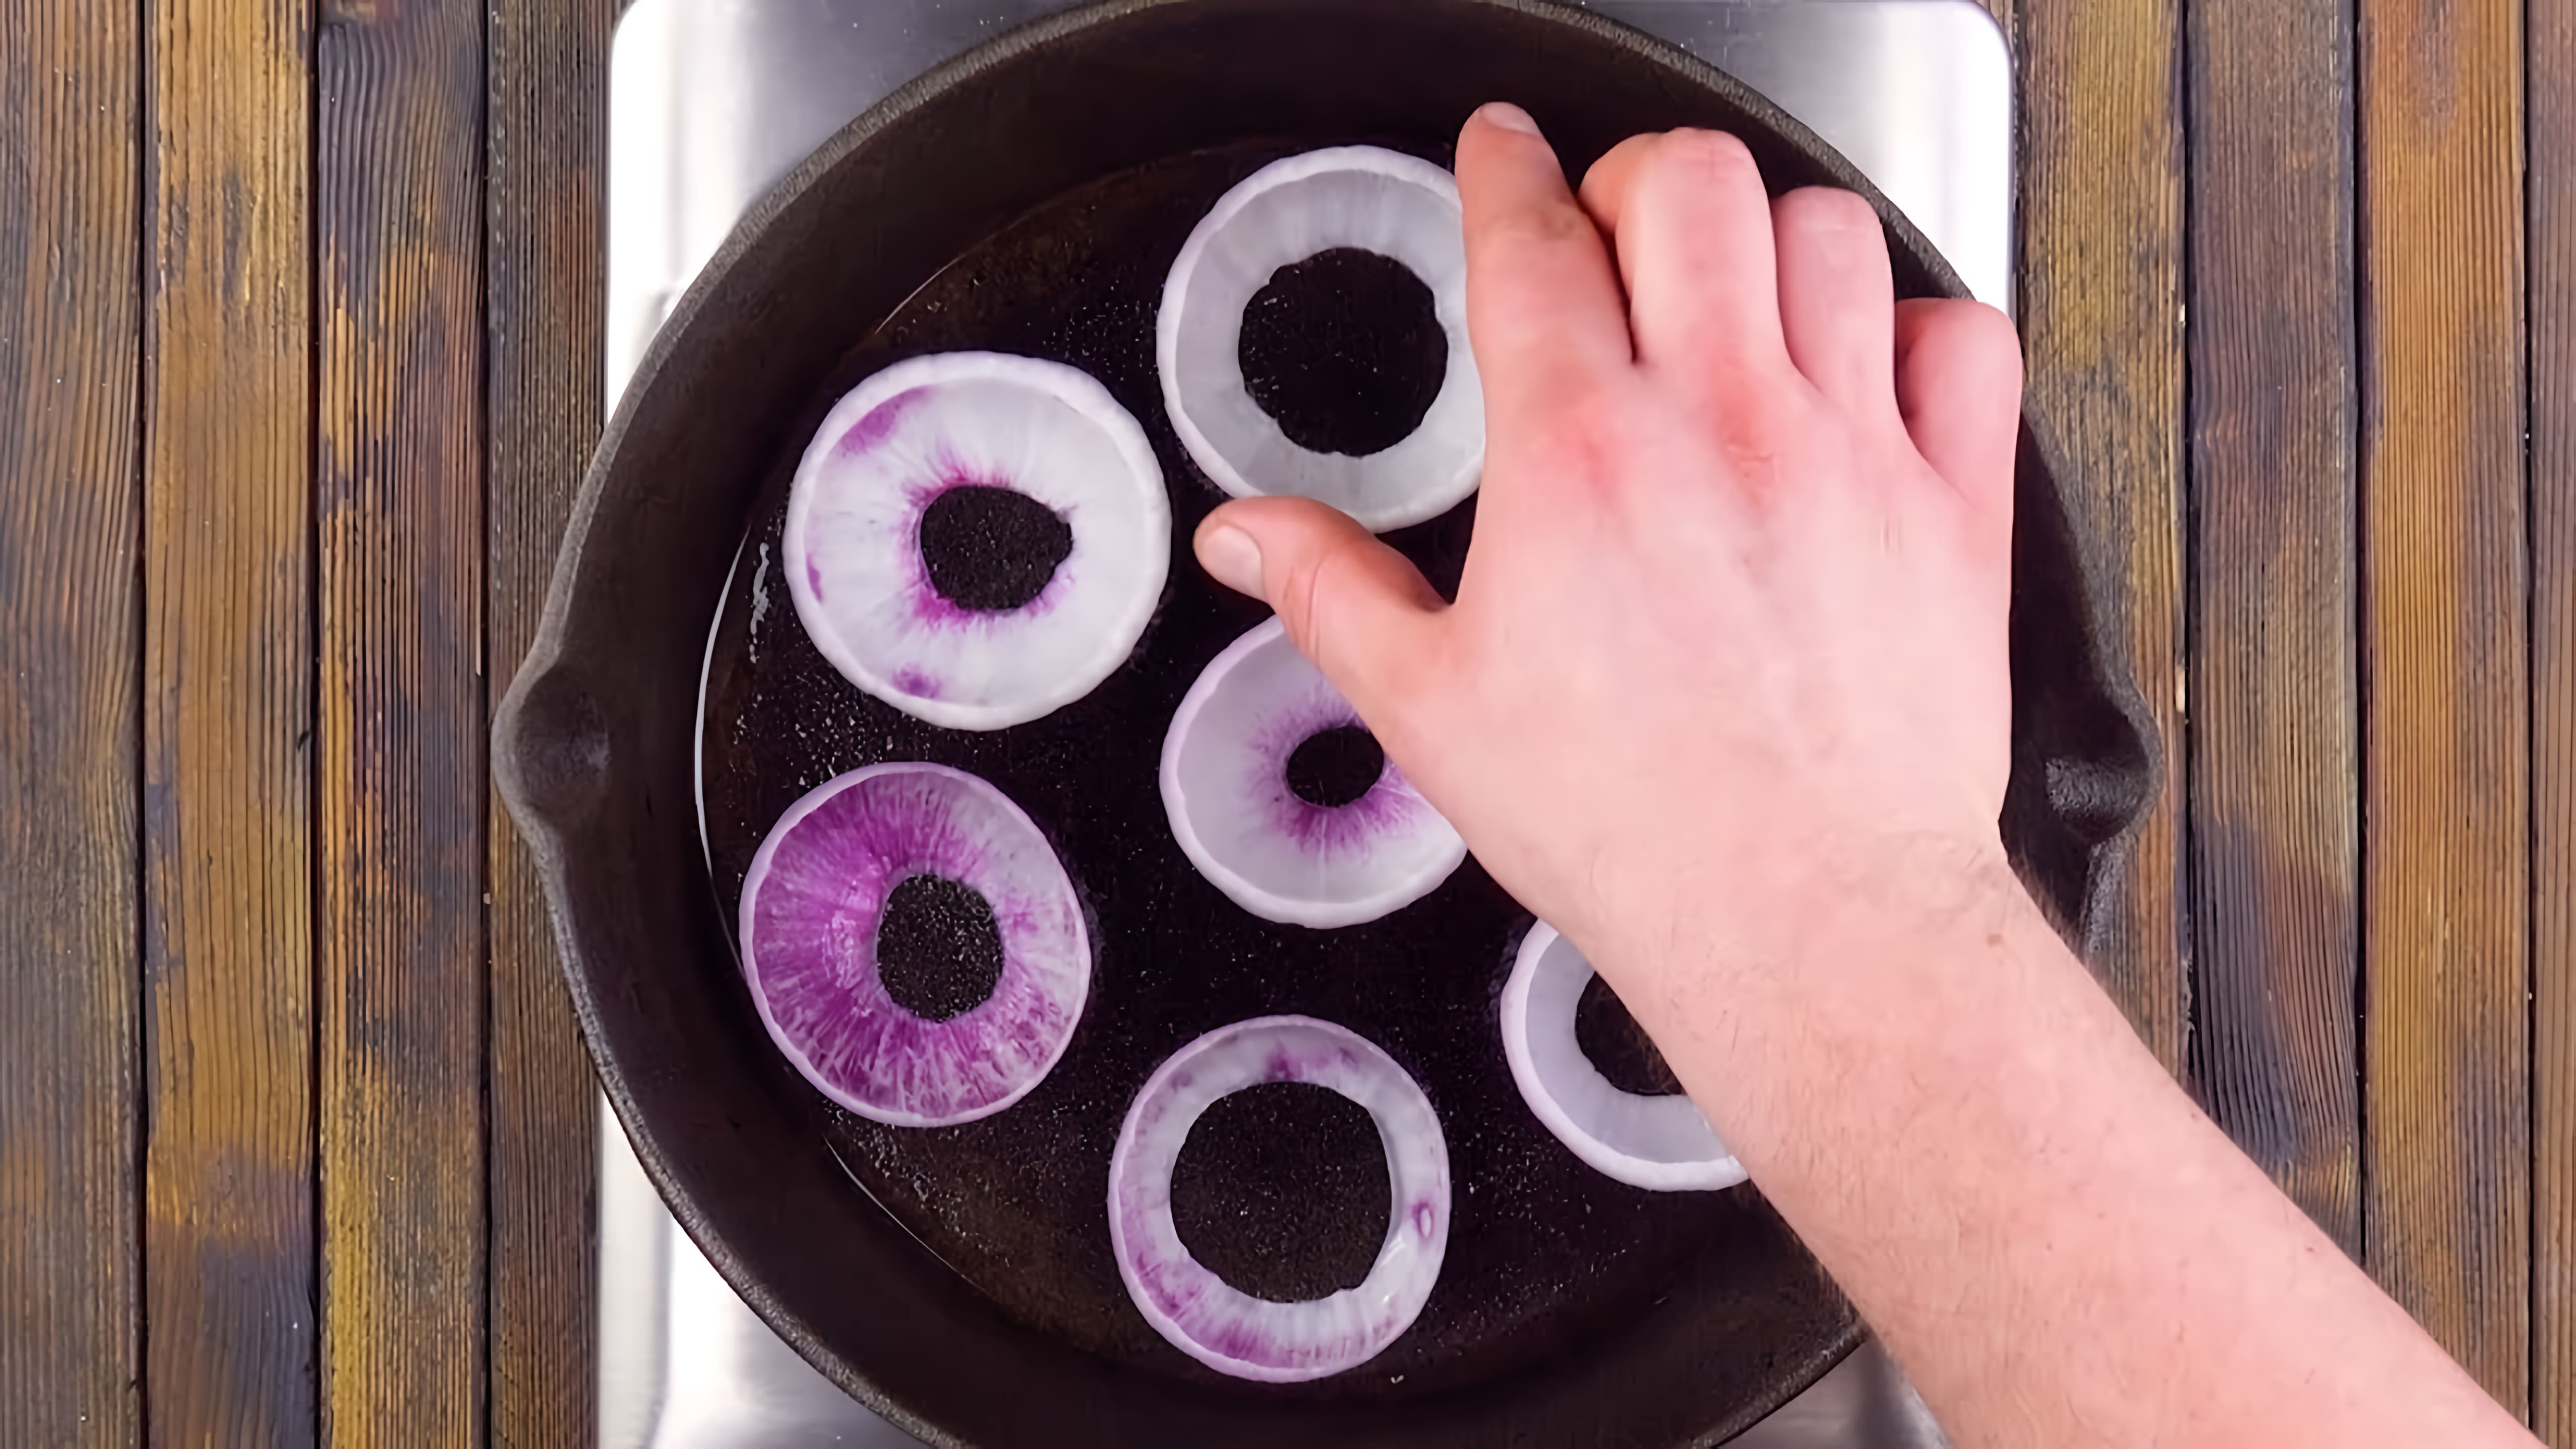 Видео: Кладем 7 луковых колец на сковороду. От начинки все в полном восторге!